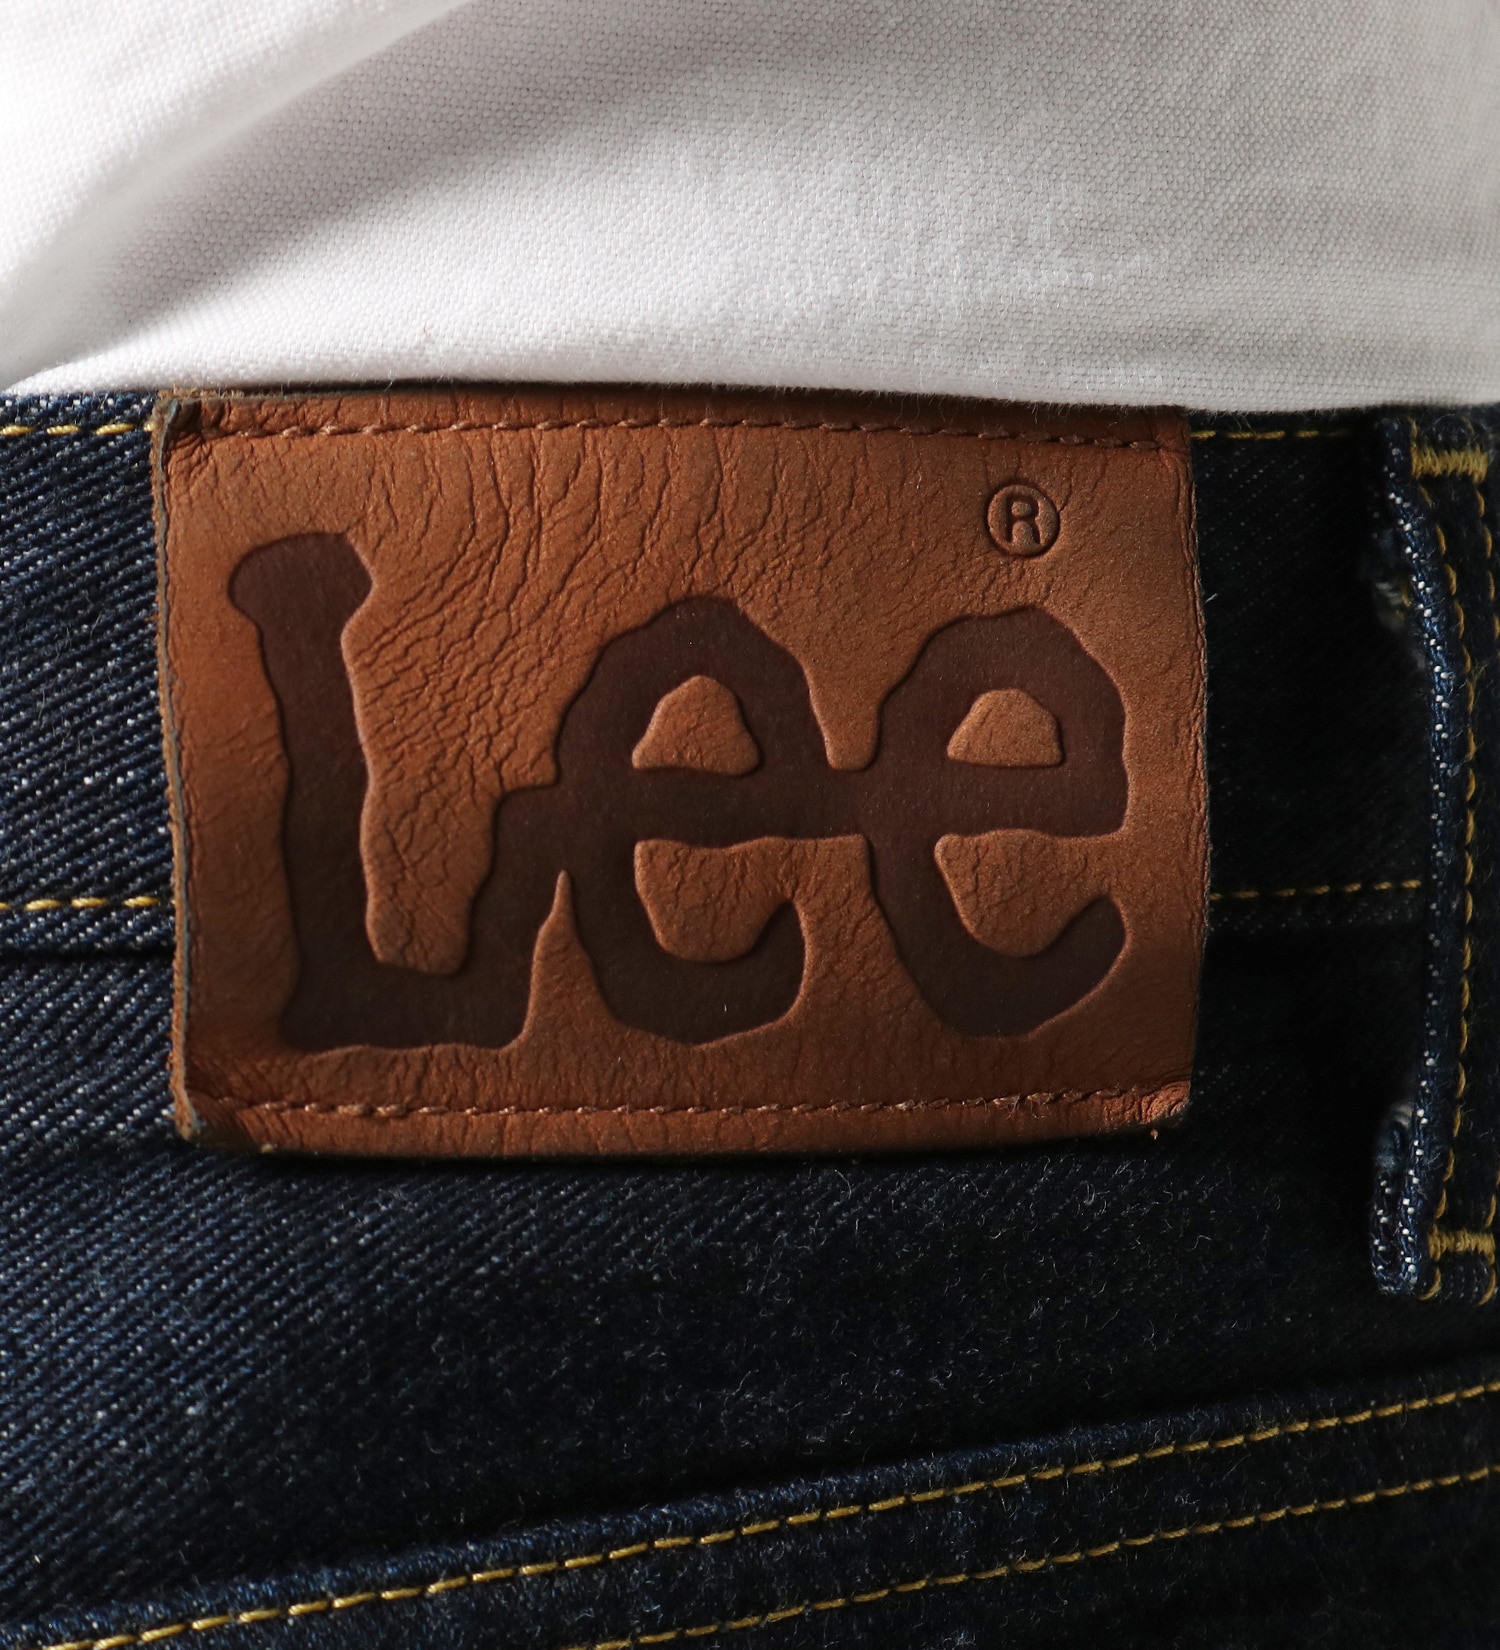 Lee(リー)の【試着対象】AMERICAN STANDARD 201 ストレートジーンズ|パンツ/デニムパンツ/メンズ|インディゴブルー